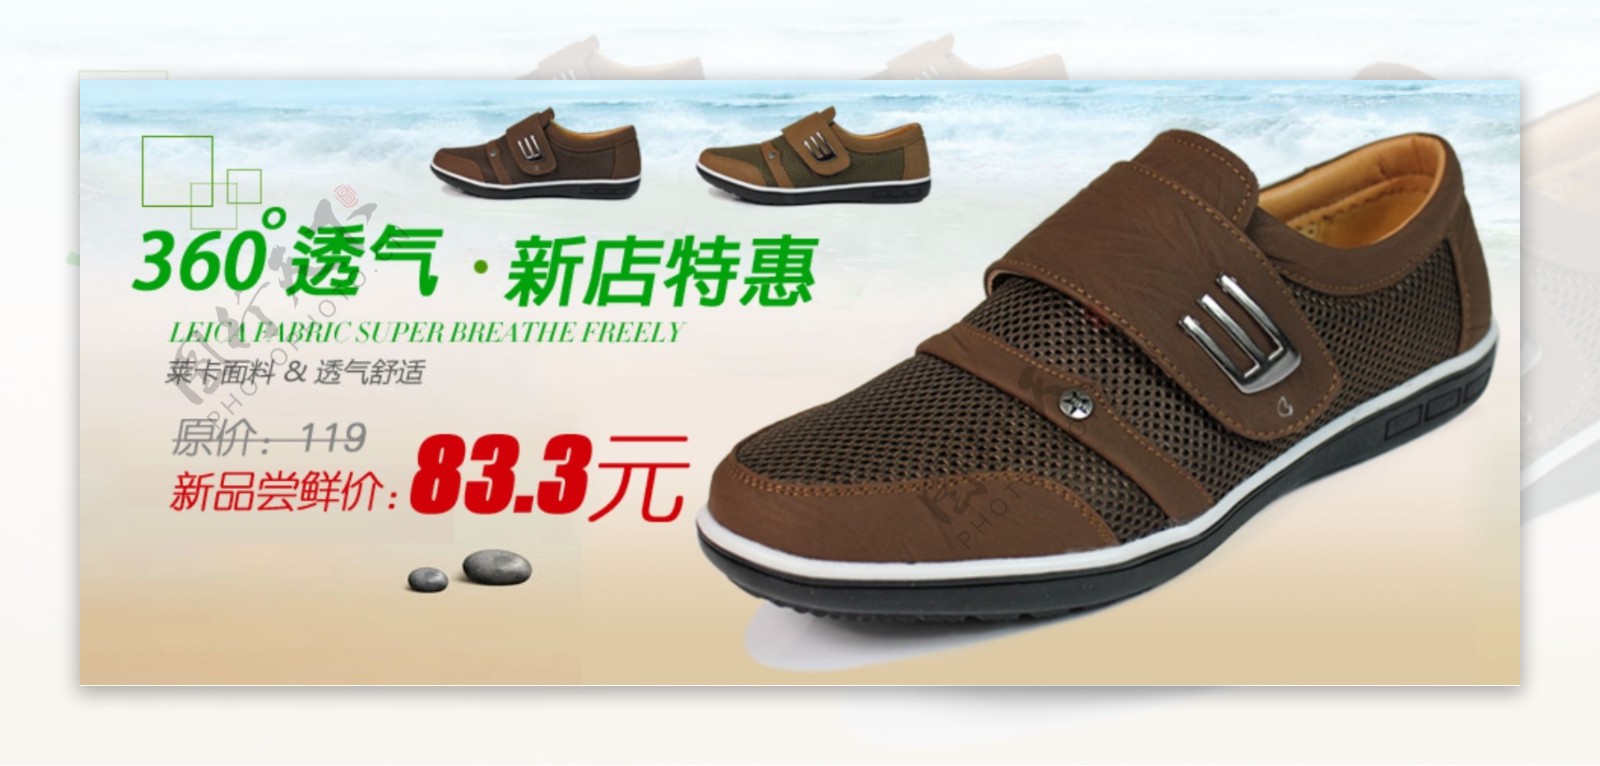 淘宝卖鞋子广告PSD图片模版